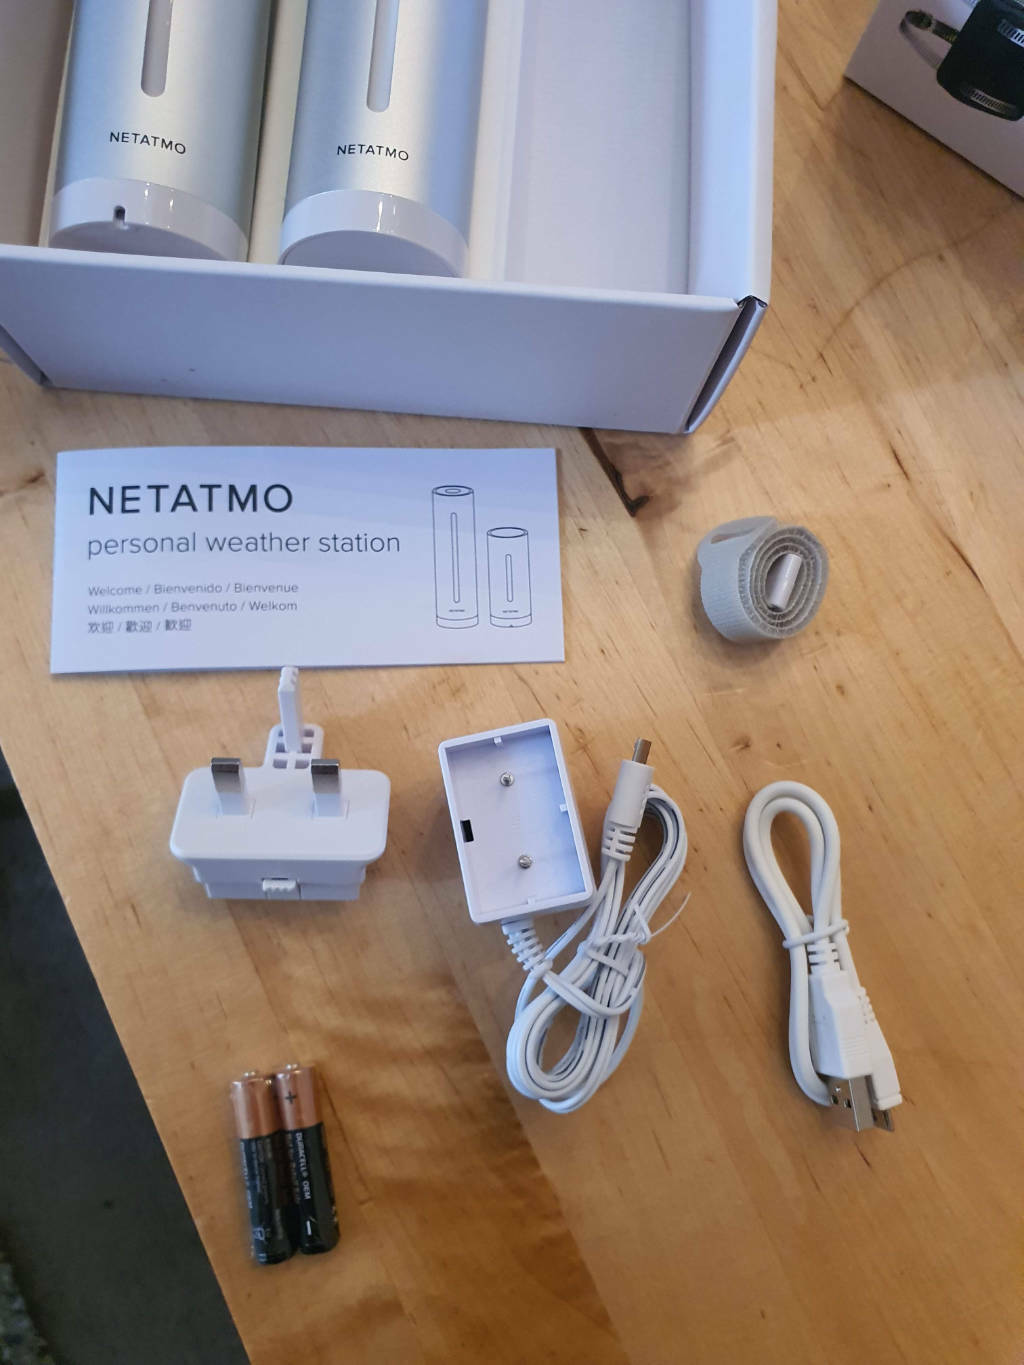 Accessories in the Netatmo box